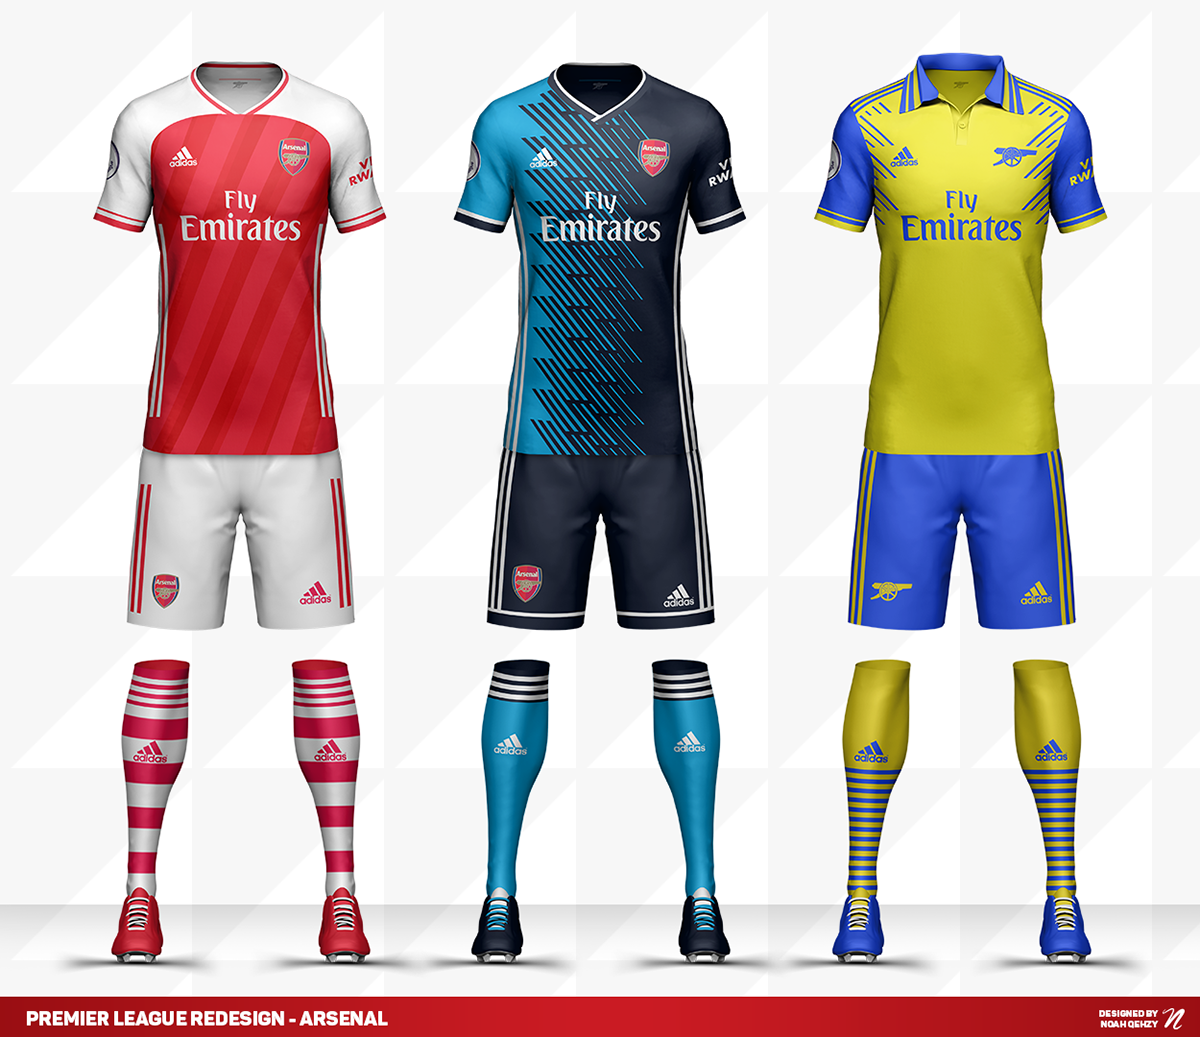 Opwekking Moedig aan boerderij Premier League Kits Redesigned (2020/21) on Behance